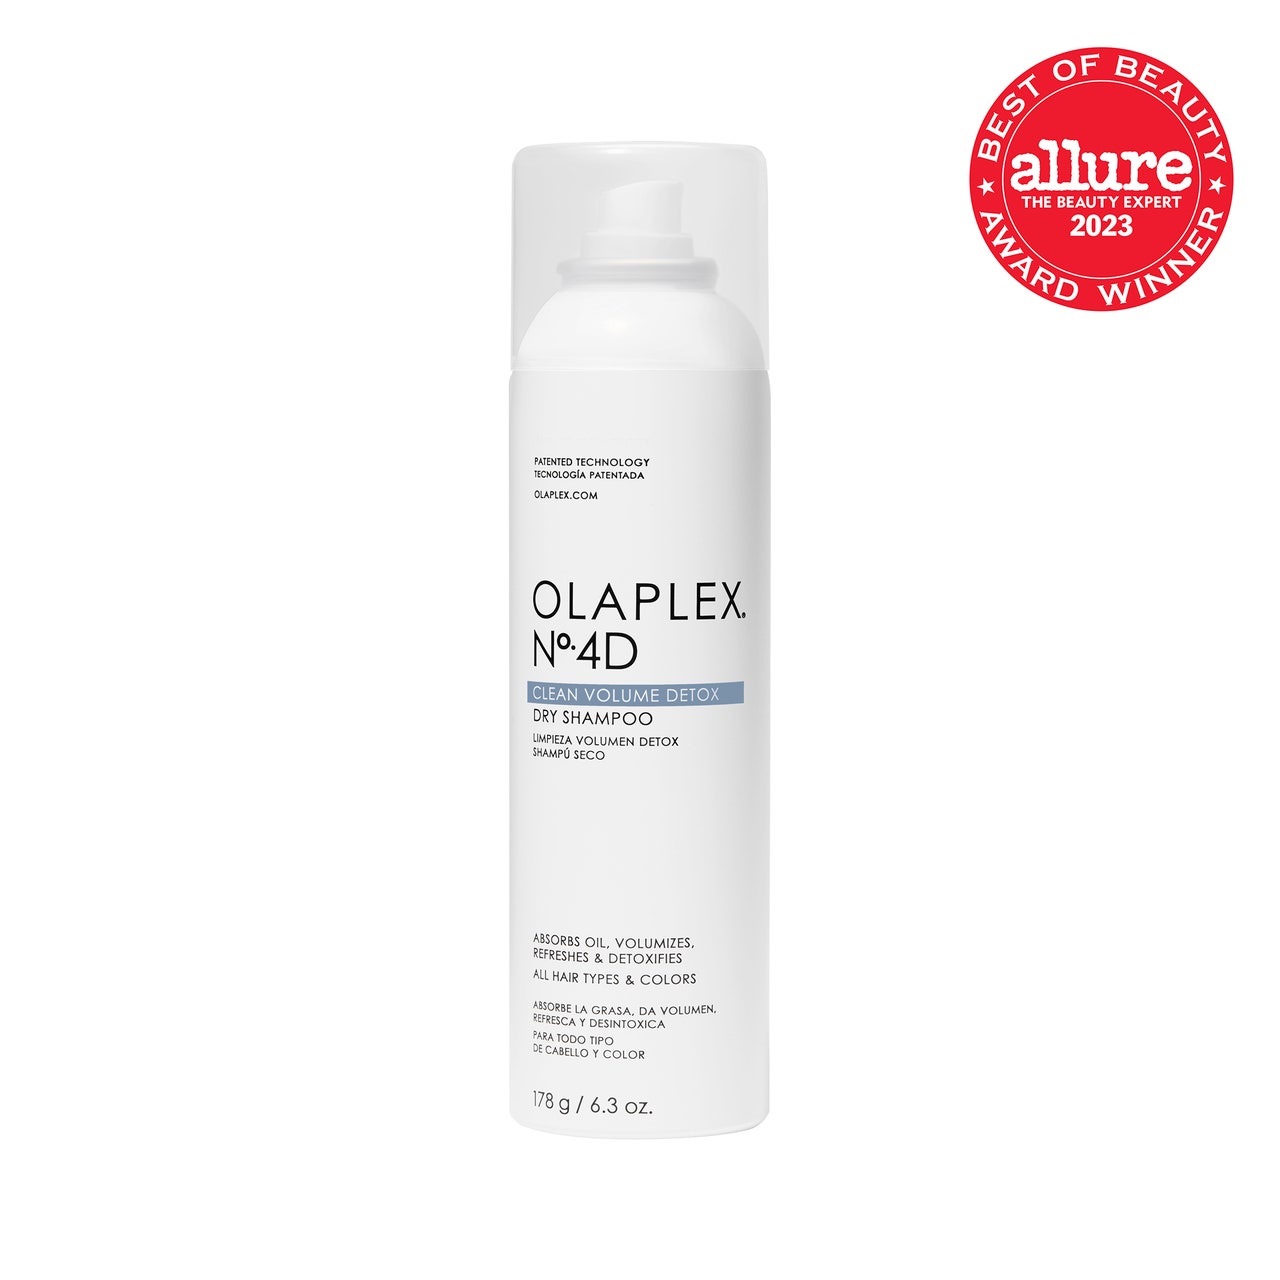 Olaplex Nr. 4D Clean Volume Detox Dry Shampoo, weiße Sprühdose auf weißem Hintergrund mit rotem Allure BoB-Siegel in der oberen rechten Ecke